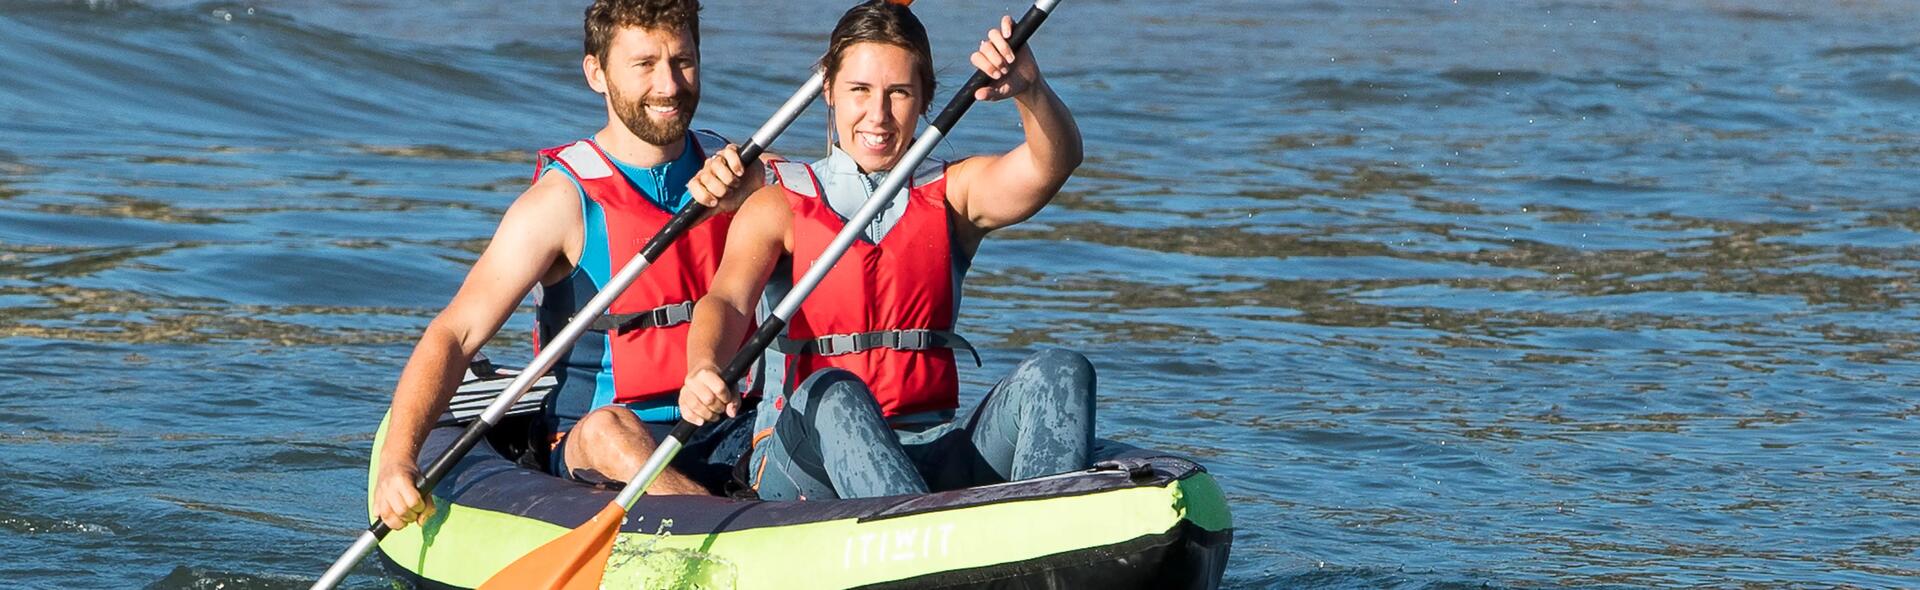 avantage canoe kayak